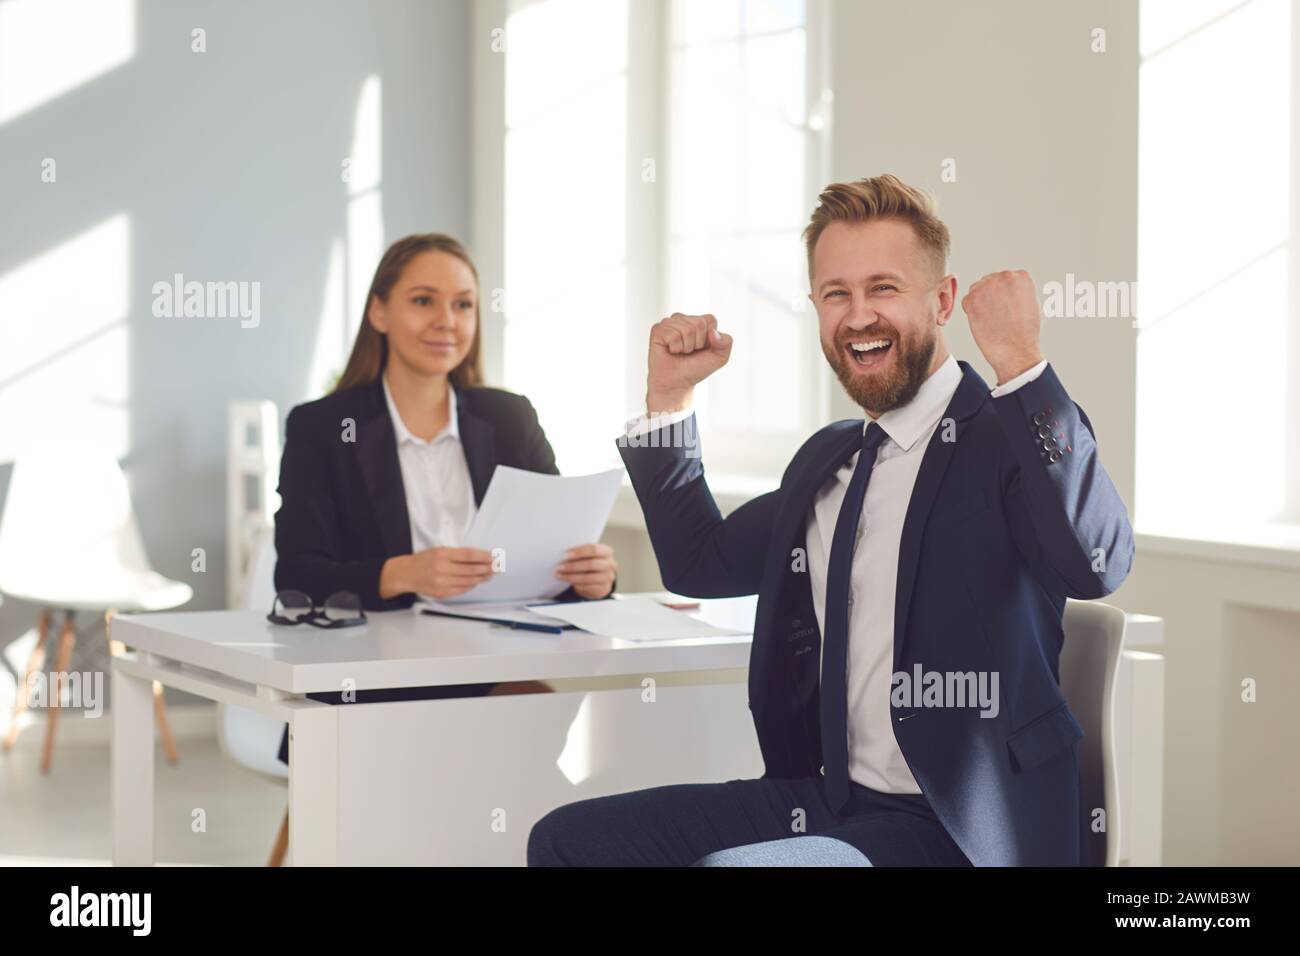 Erfolgreiches Interview. Ein Mann im Anzug freut sich über einen neuen Job, der mit einer Frau in einem weißen Büro an einem Tisch sitzt. Stockfoto